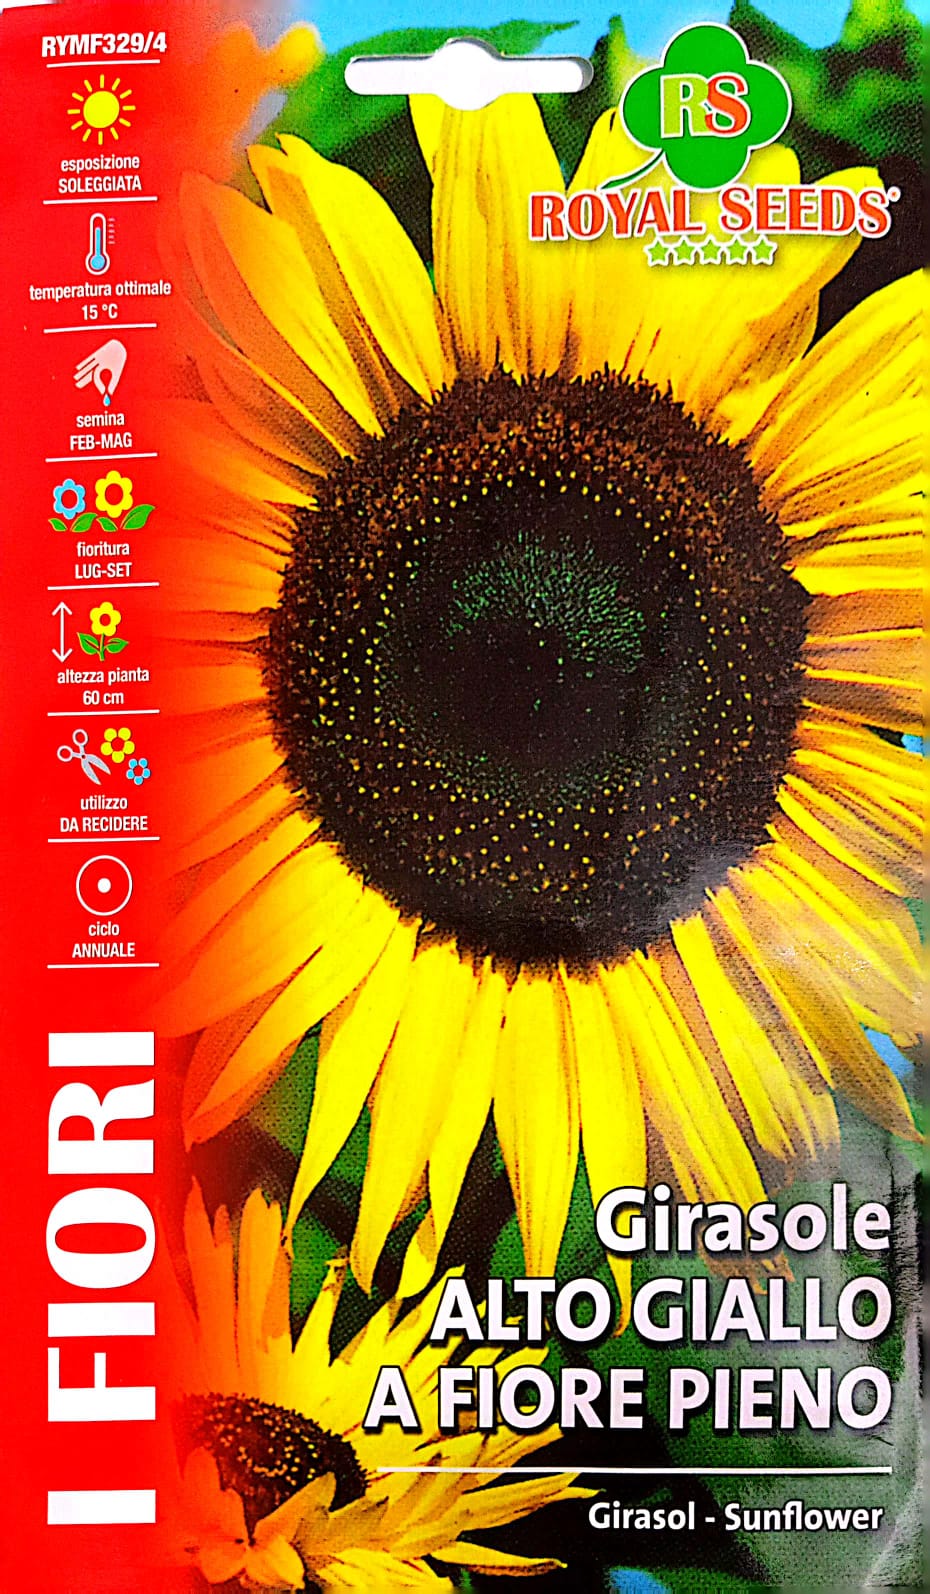 Royal Sunflower Girasole Alto Giallo 329/4